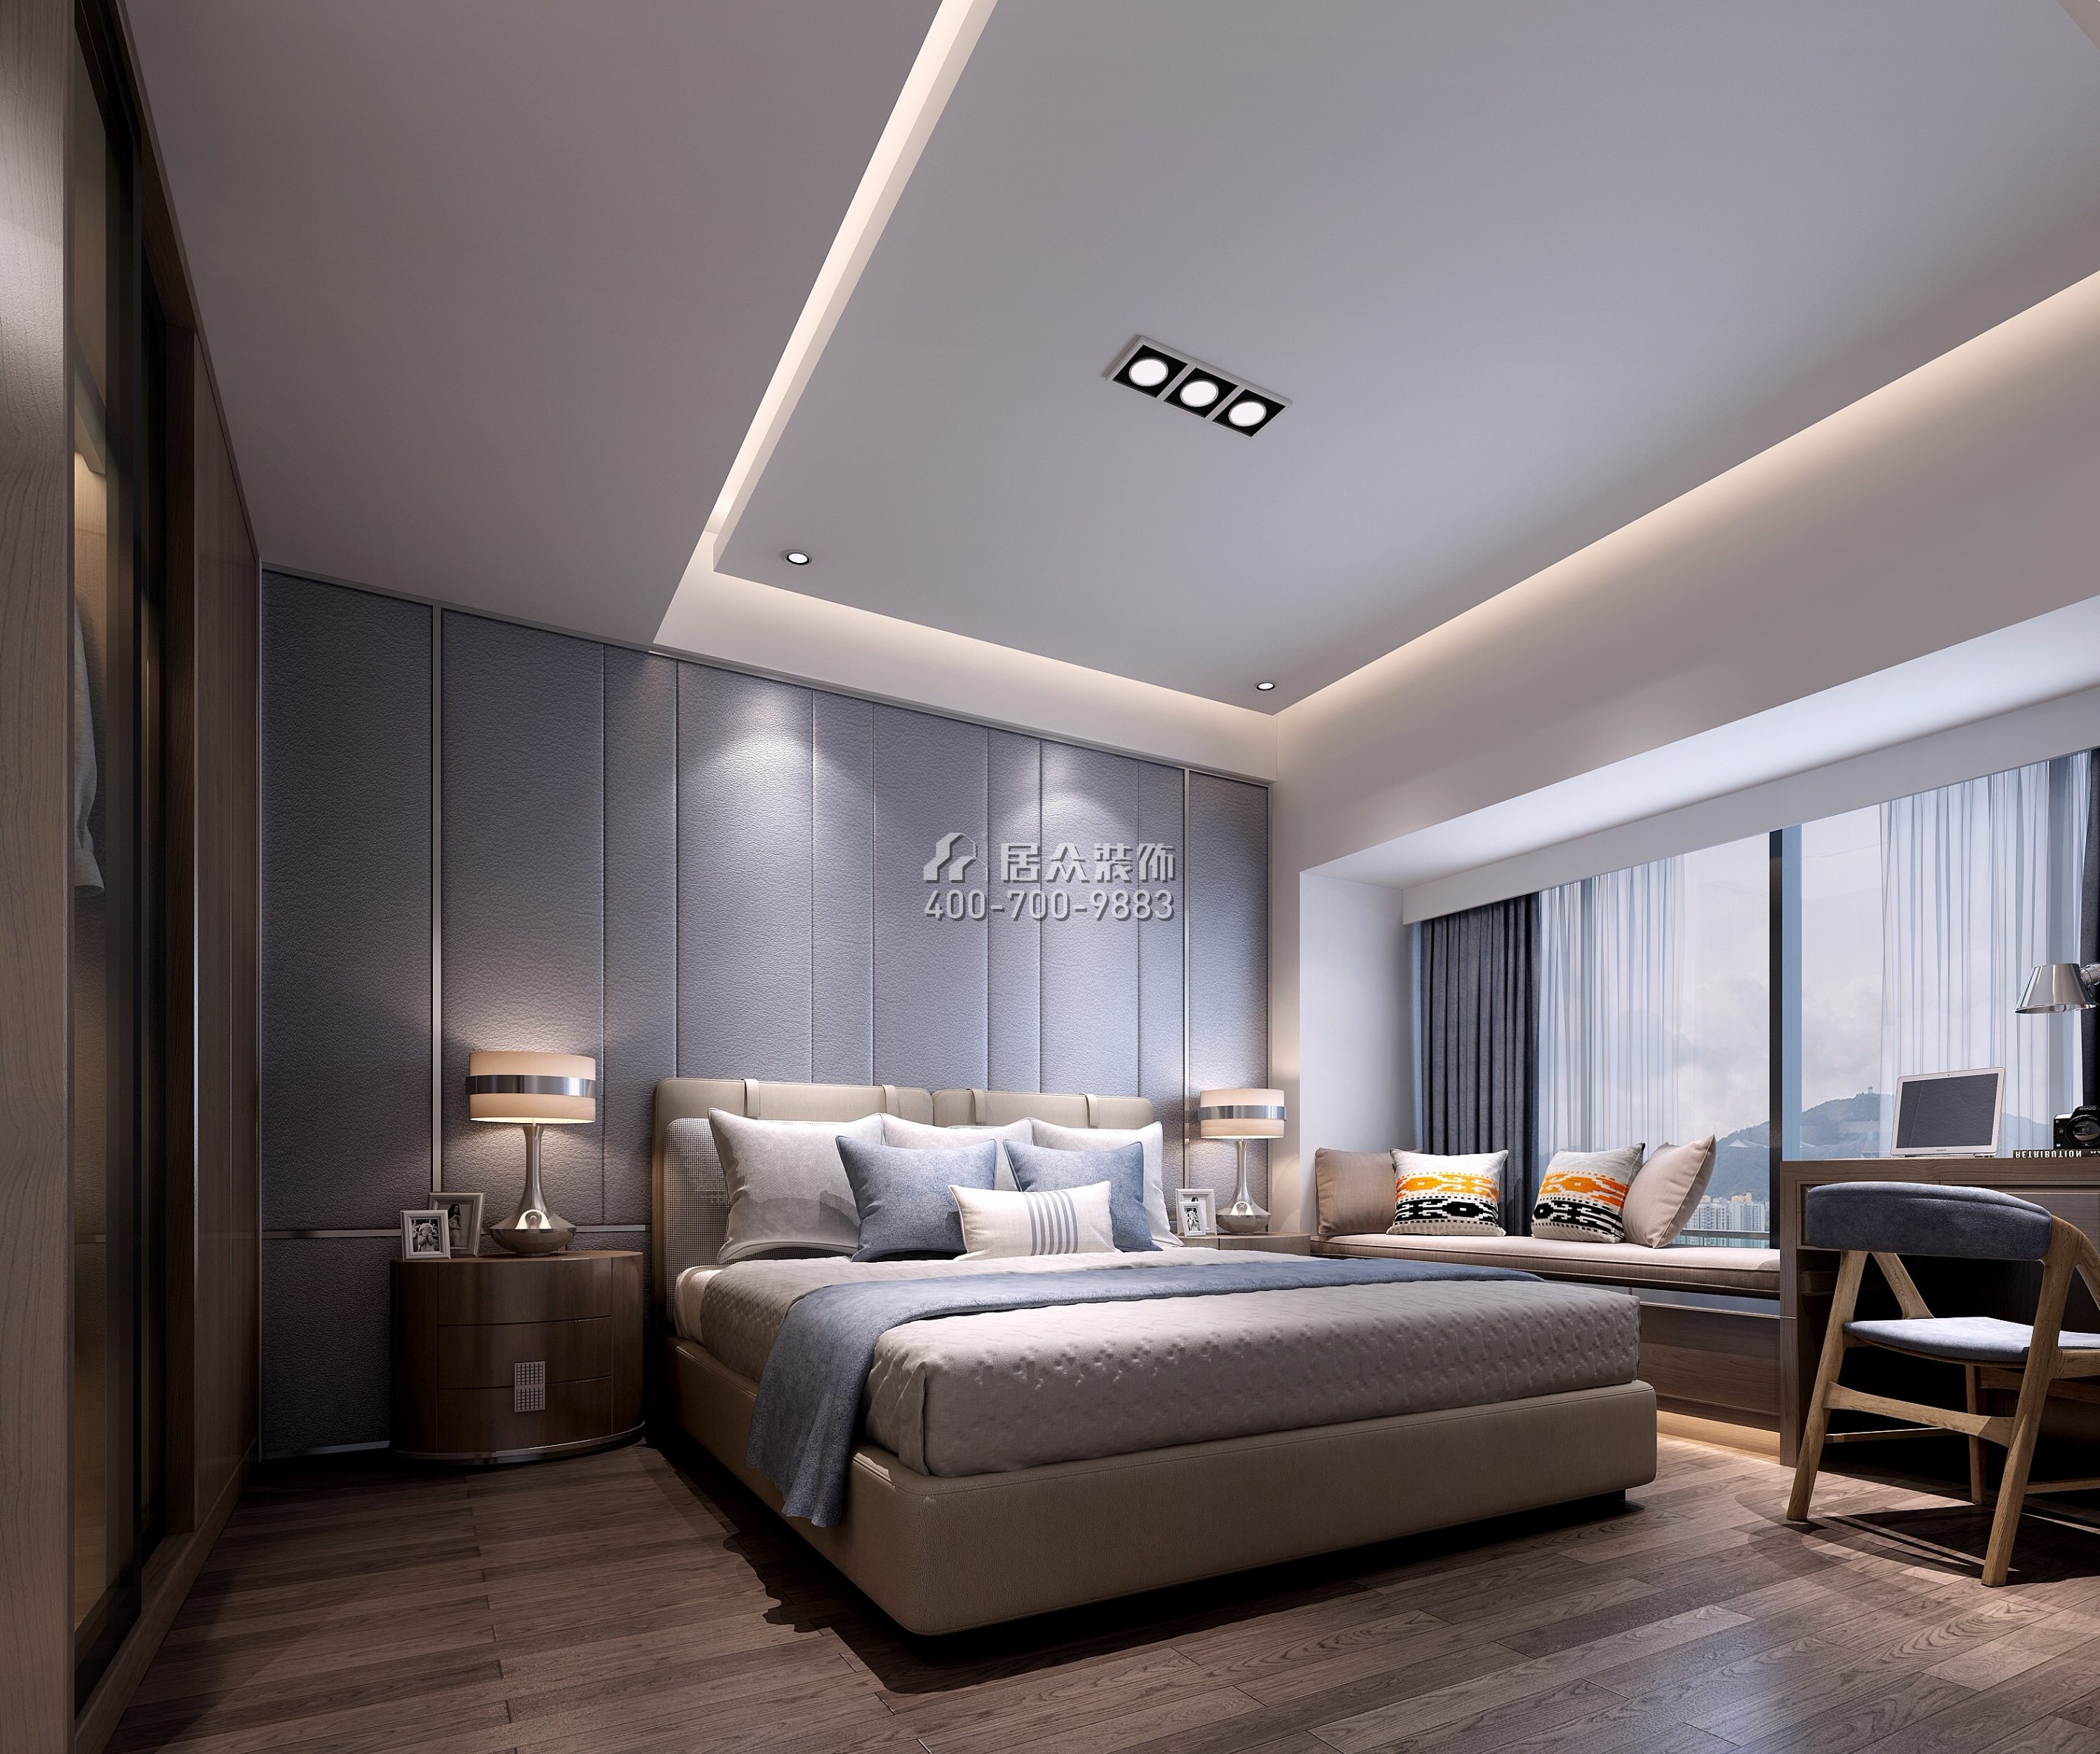 天悦湾花园120平方米现代简约风格平层户型卧室装修效果图